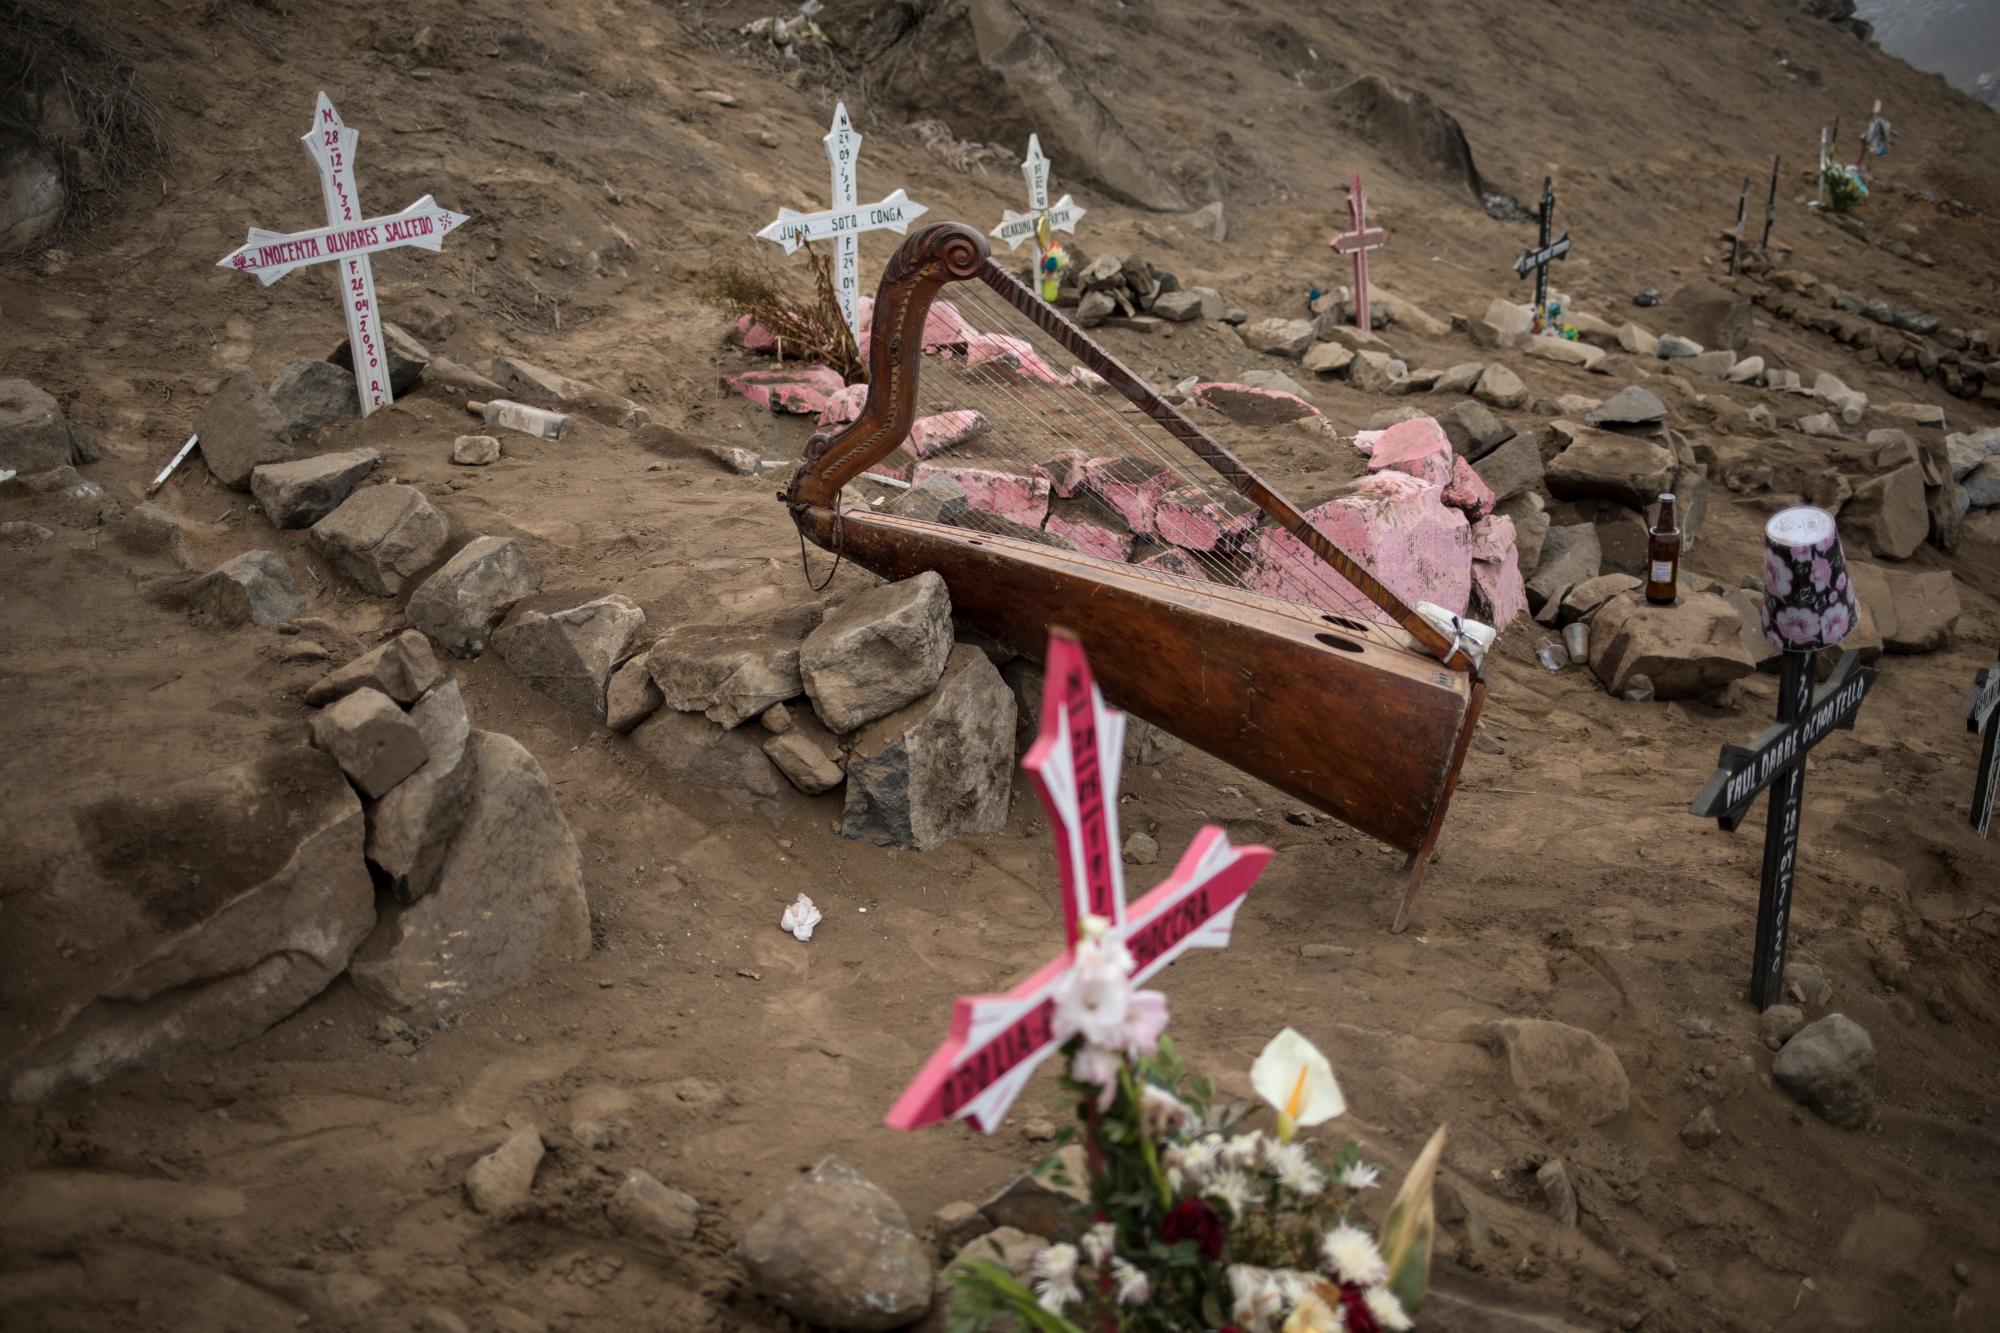 El arpa del músico Charlie Juárez se encuentra entre las tumbas de las víctimas de COVID-19 en el cementerio de Nueva Esperanza en las afueras de Lima, Perú, el martes 26 de mayo de 2020. (Foto AP / Rodrigo Abd)